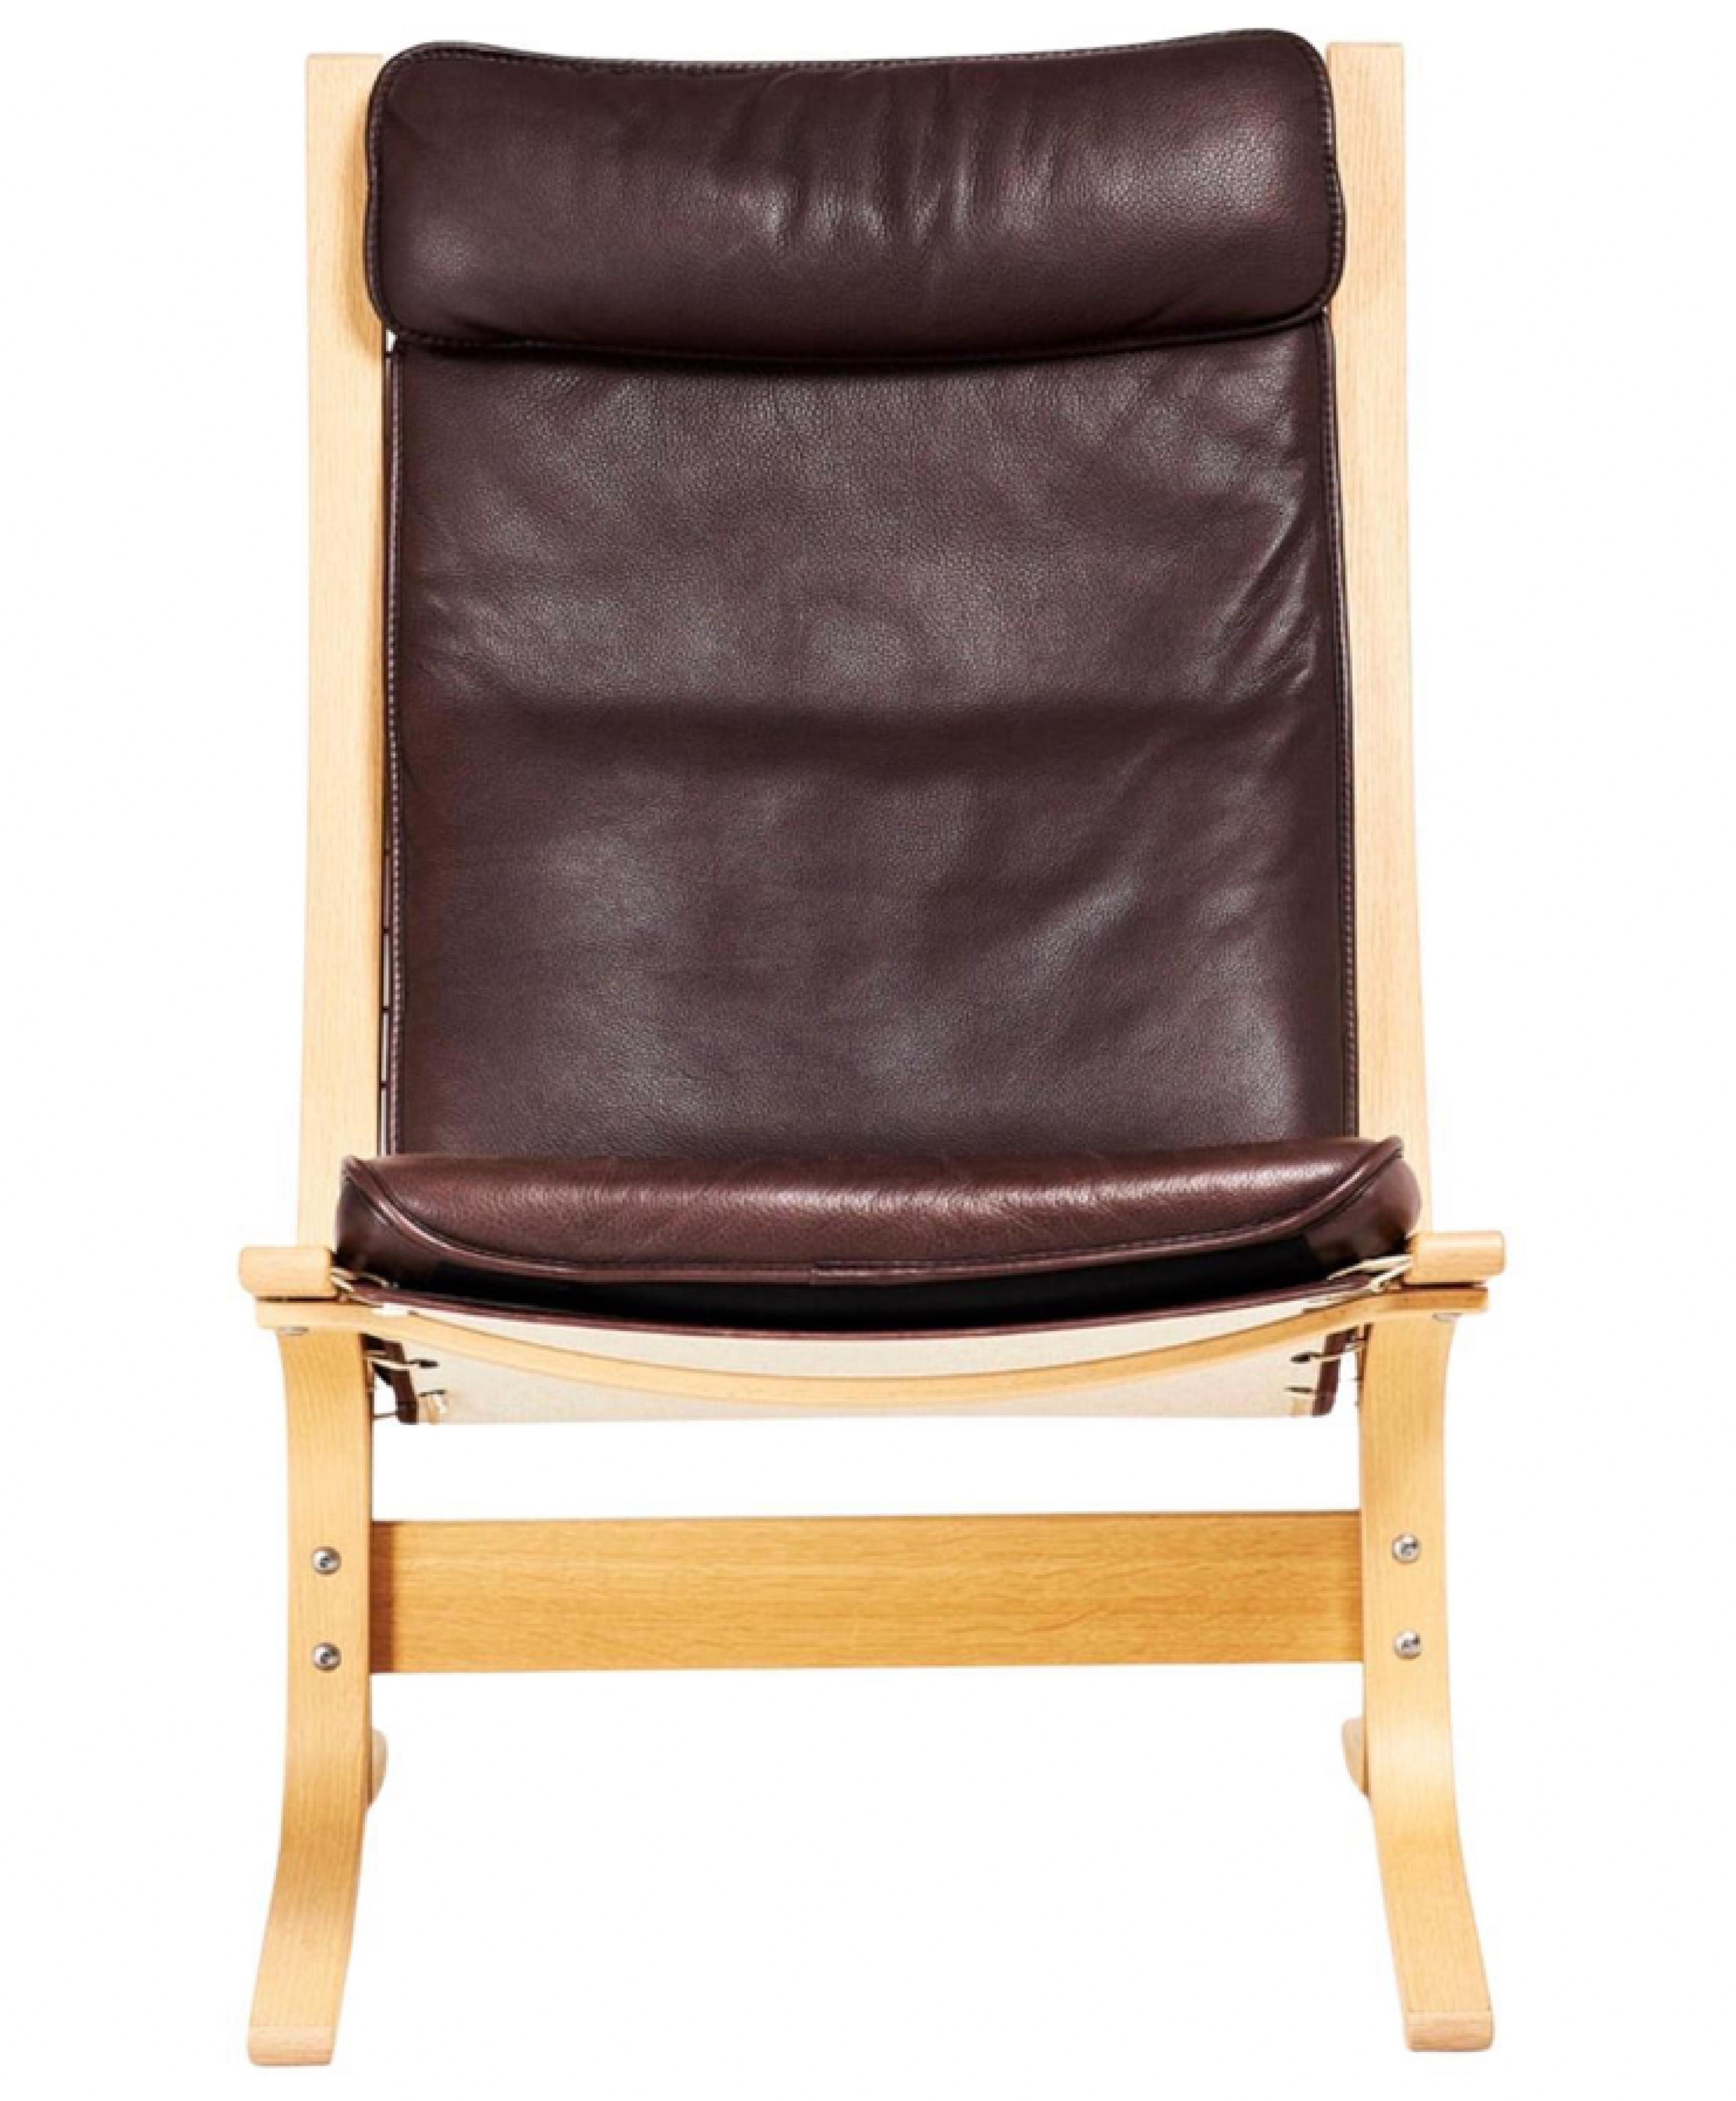 Die seltene und einzigartige FLORA-Edition der klassischen SIESTA-Sessel wurde 2005 anlässlich des 40-jährigen Jubiläums von Ingmar Rellings Original-Siesta-Sessel hergestellt.

Unter Beibehaltung des minimalistischen und eleganten Designs ist die